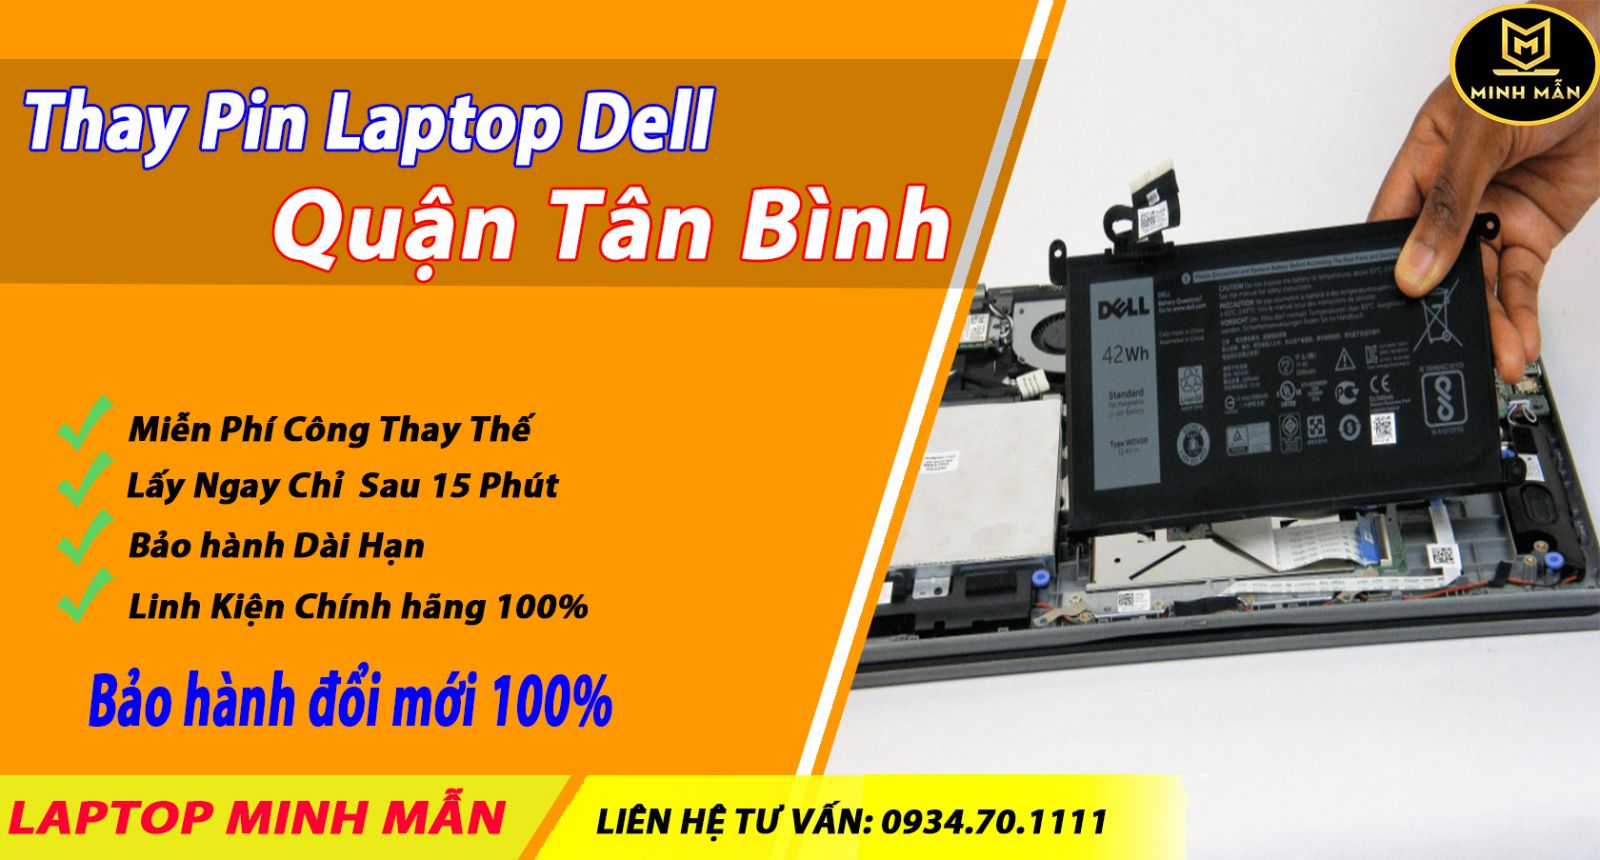 Thay-pin-laptop-Dell-quận-Tân-Bình